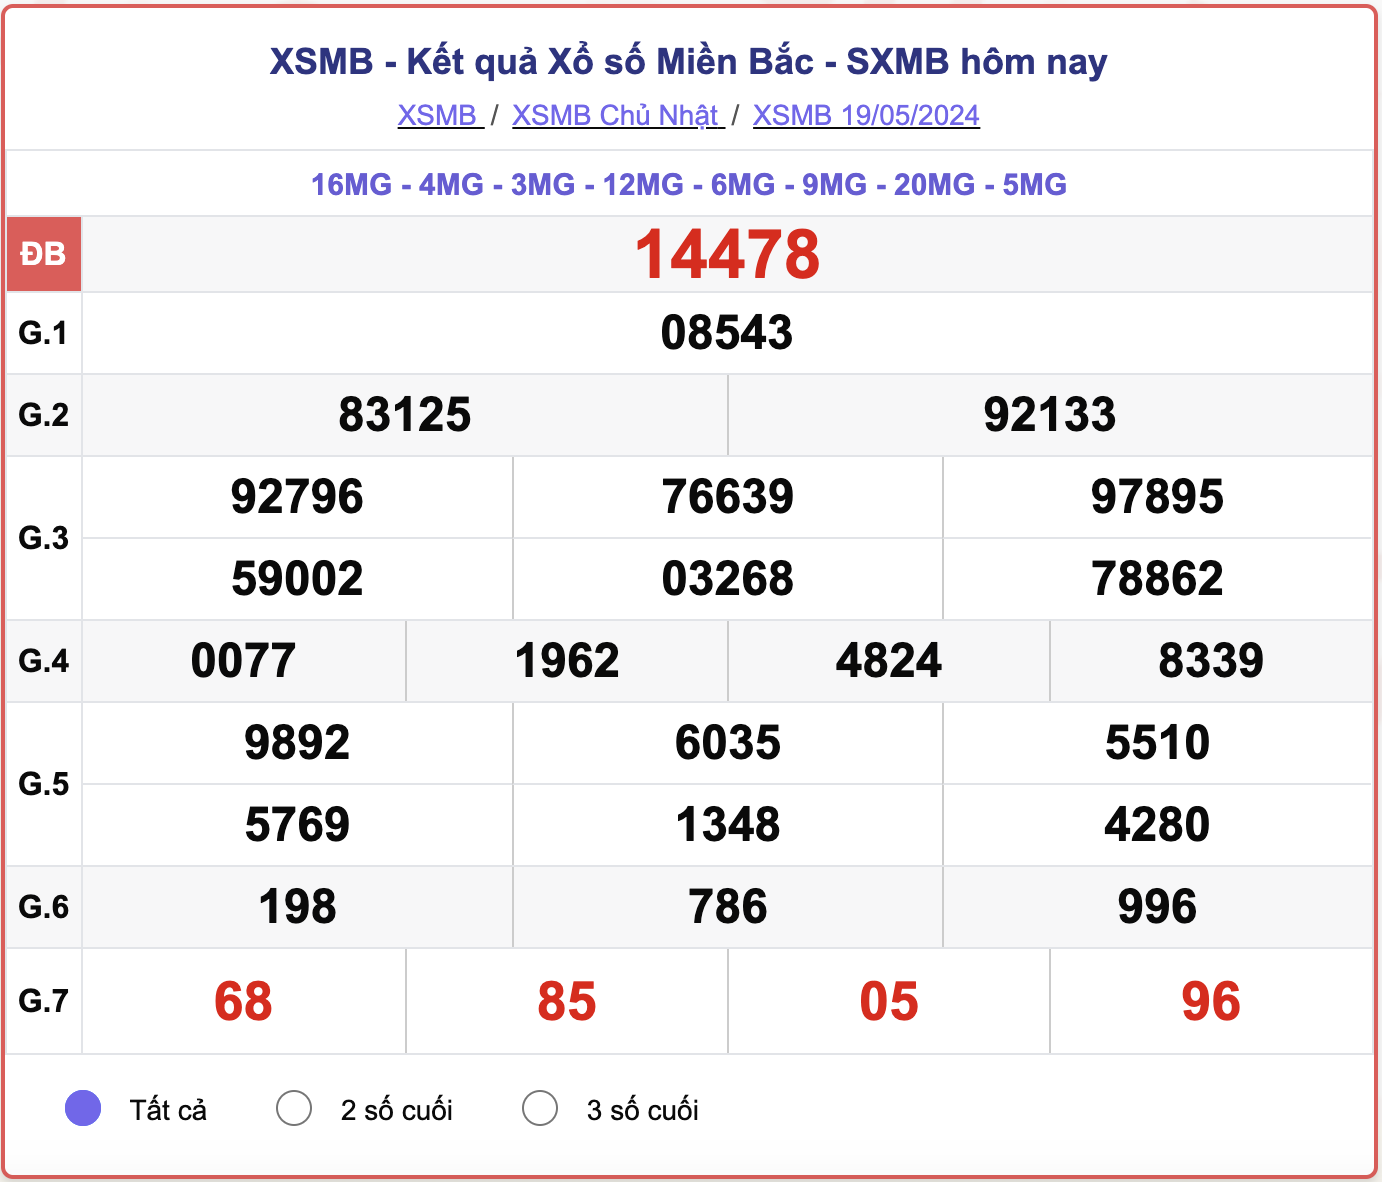 XSMB 26/5 - Kết quả xổ số miền Bắc hôm nay 26/5/2024 - KQXSMB ngày 26/5- Ảnh 8.